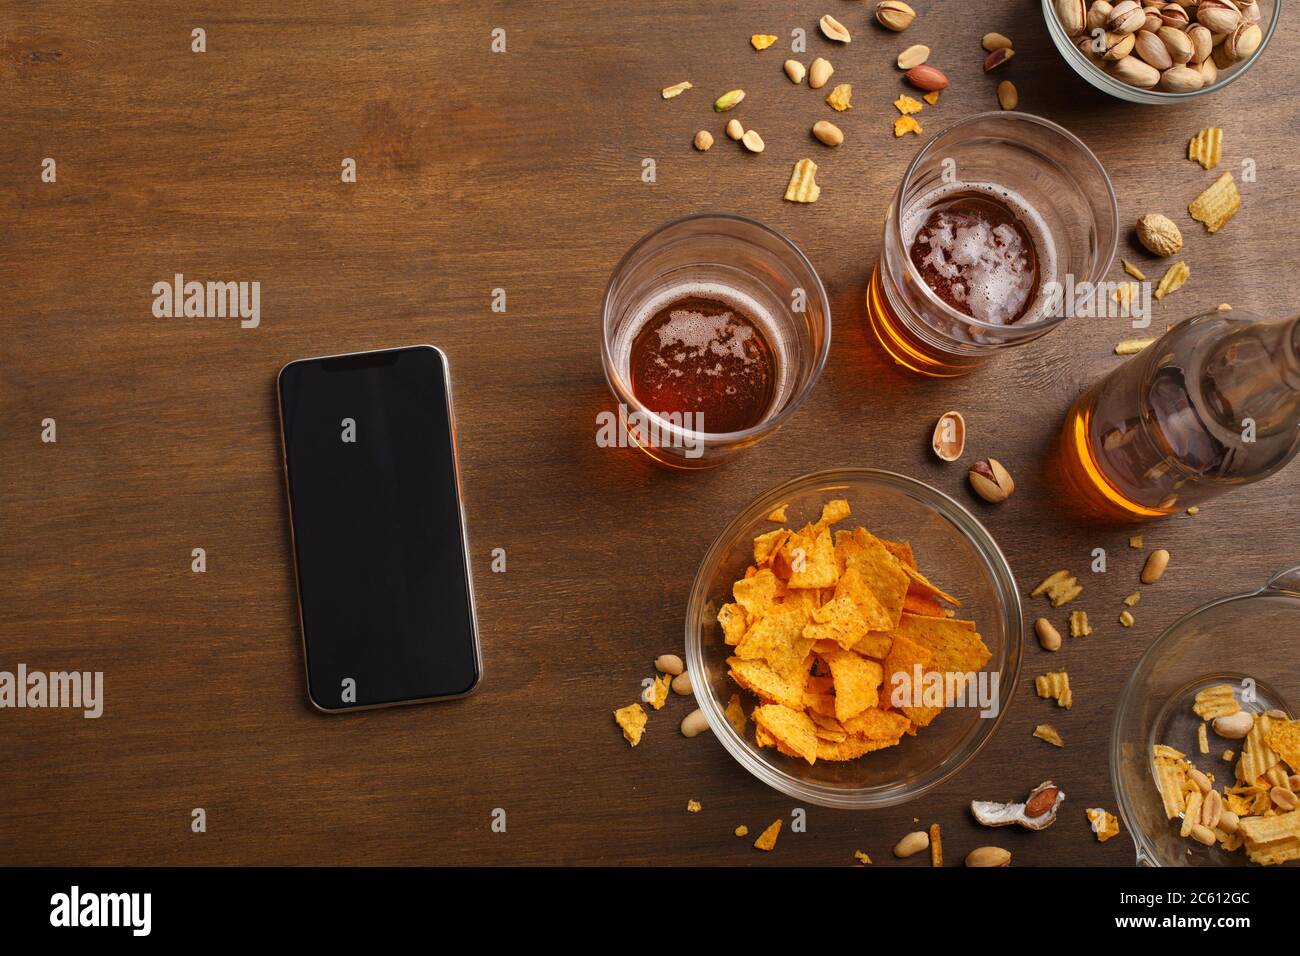 Incontri moderni al bar. Smartphone, due bicchieri di birra, bottiglia, pistacchio e patatine sono sparsi sul tavolo Foto Stock